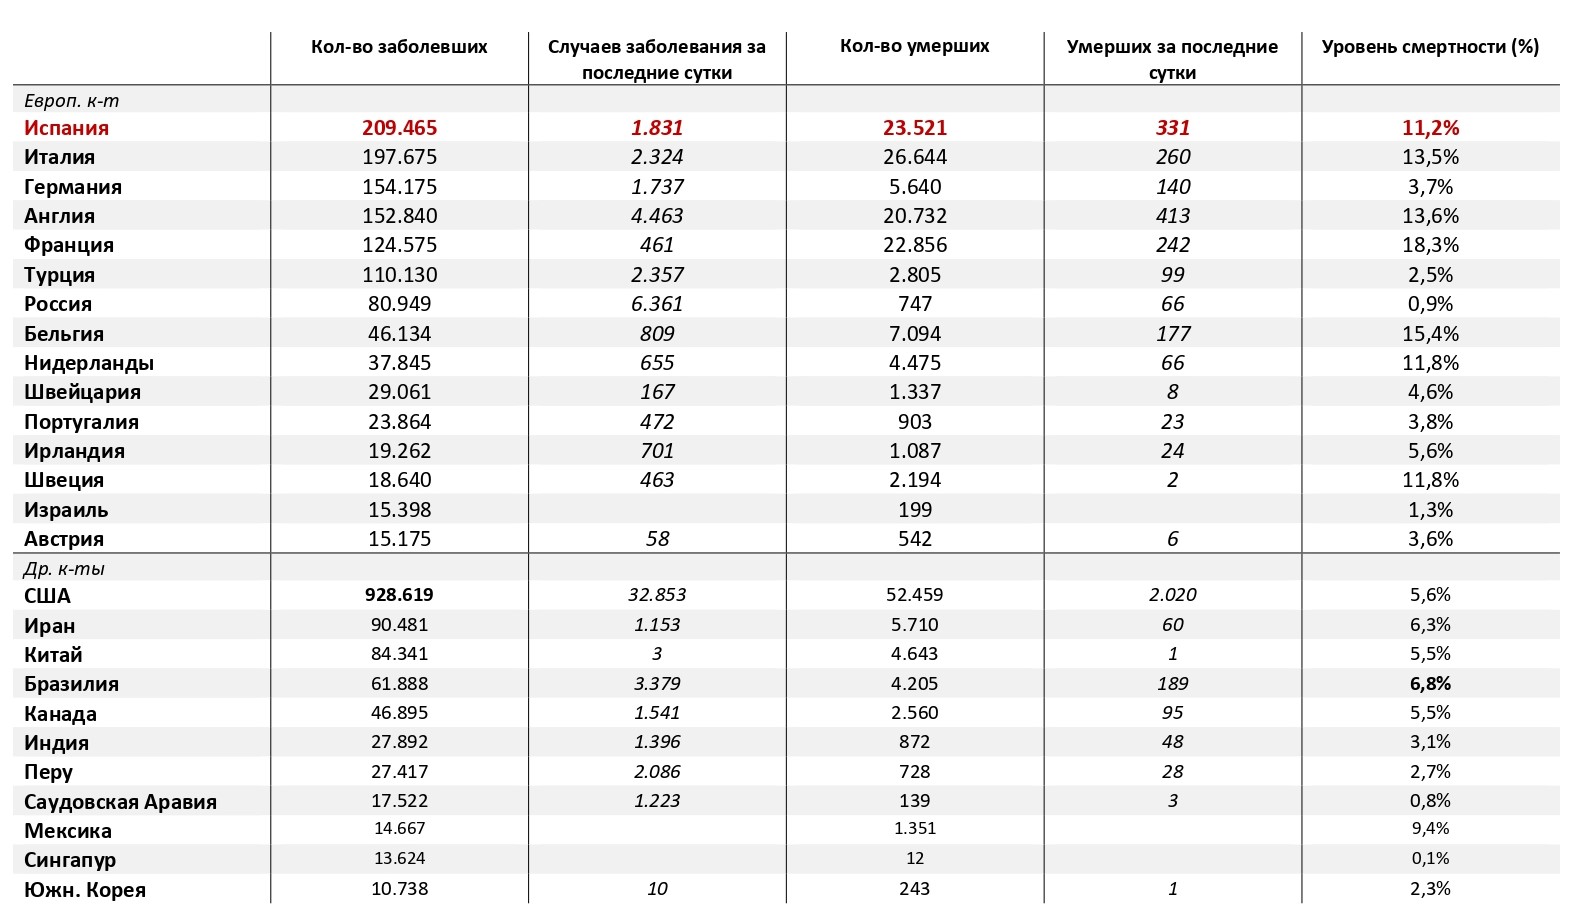 Статистика смертности в санкт-петербурге: причины высокой смертности, выявленные экспертами